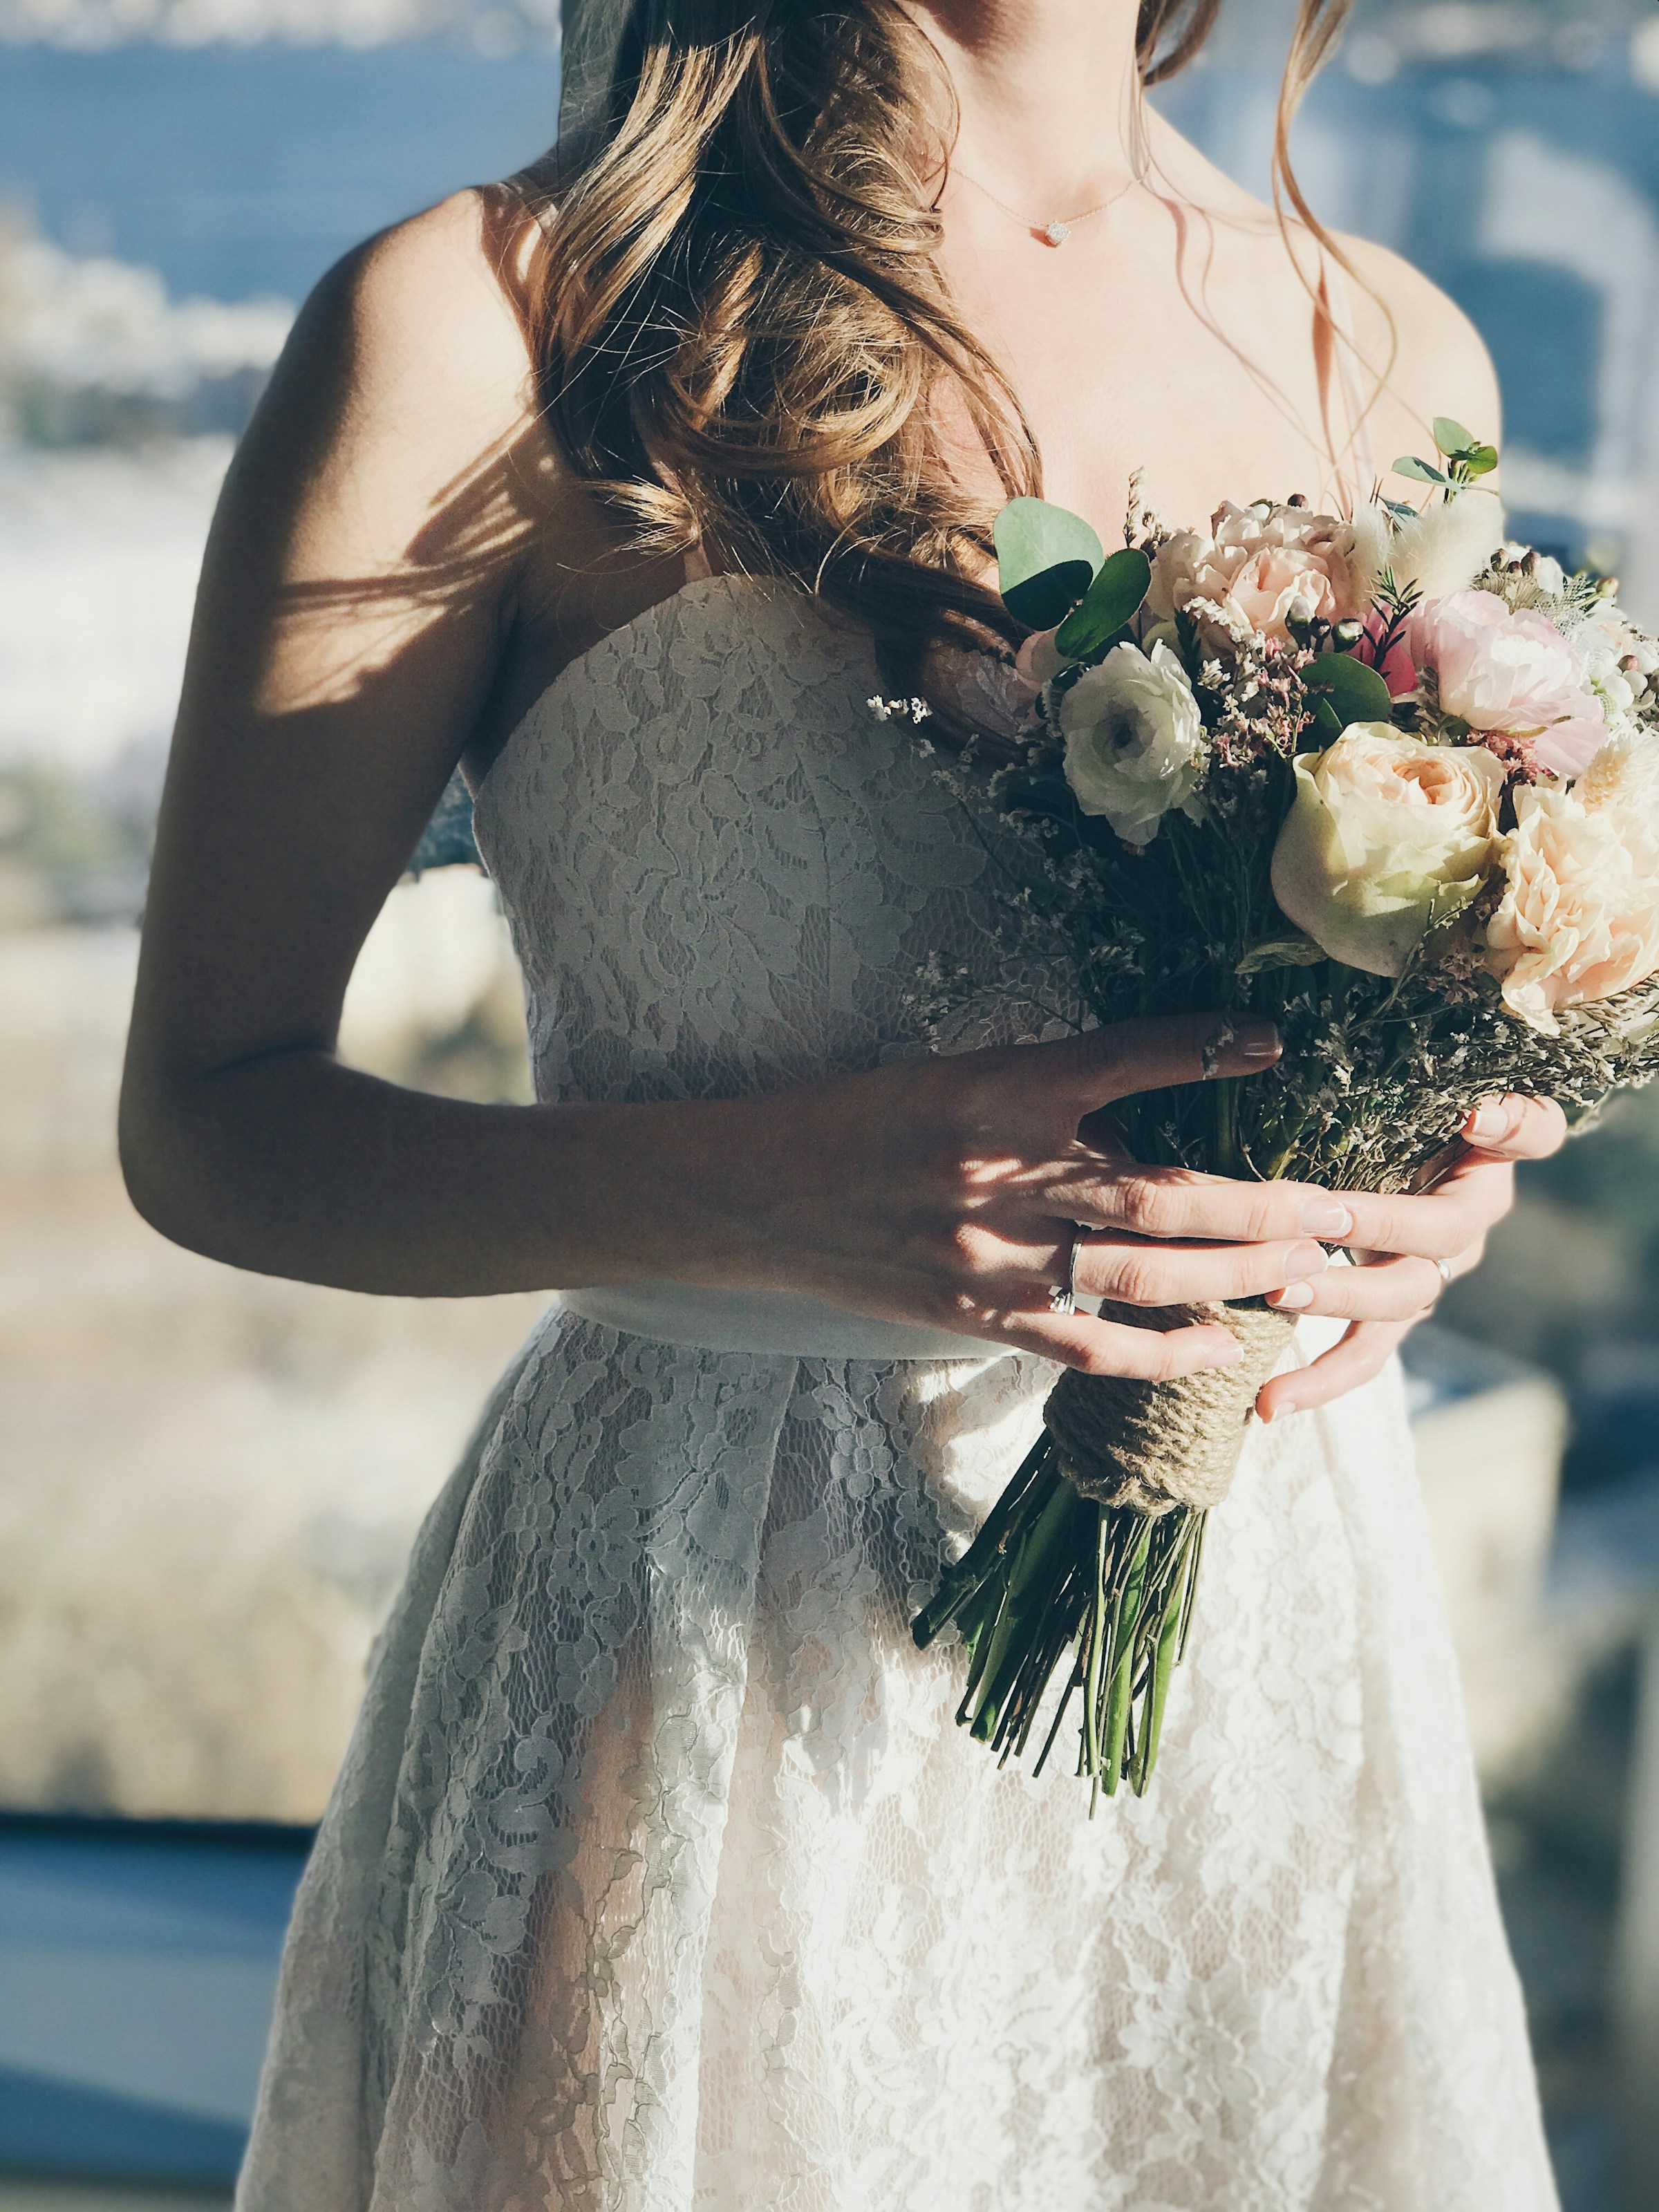 A bride | Source: Unsplash